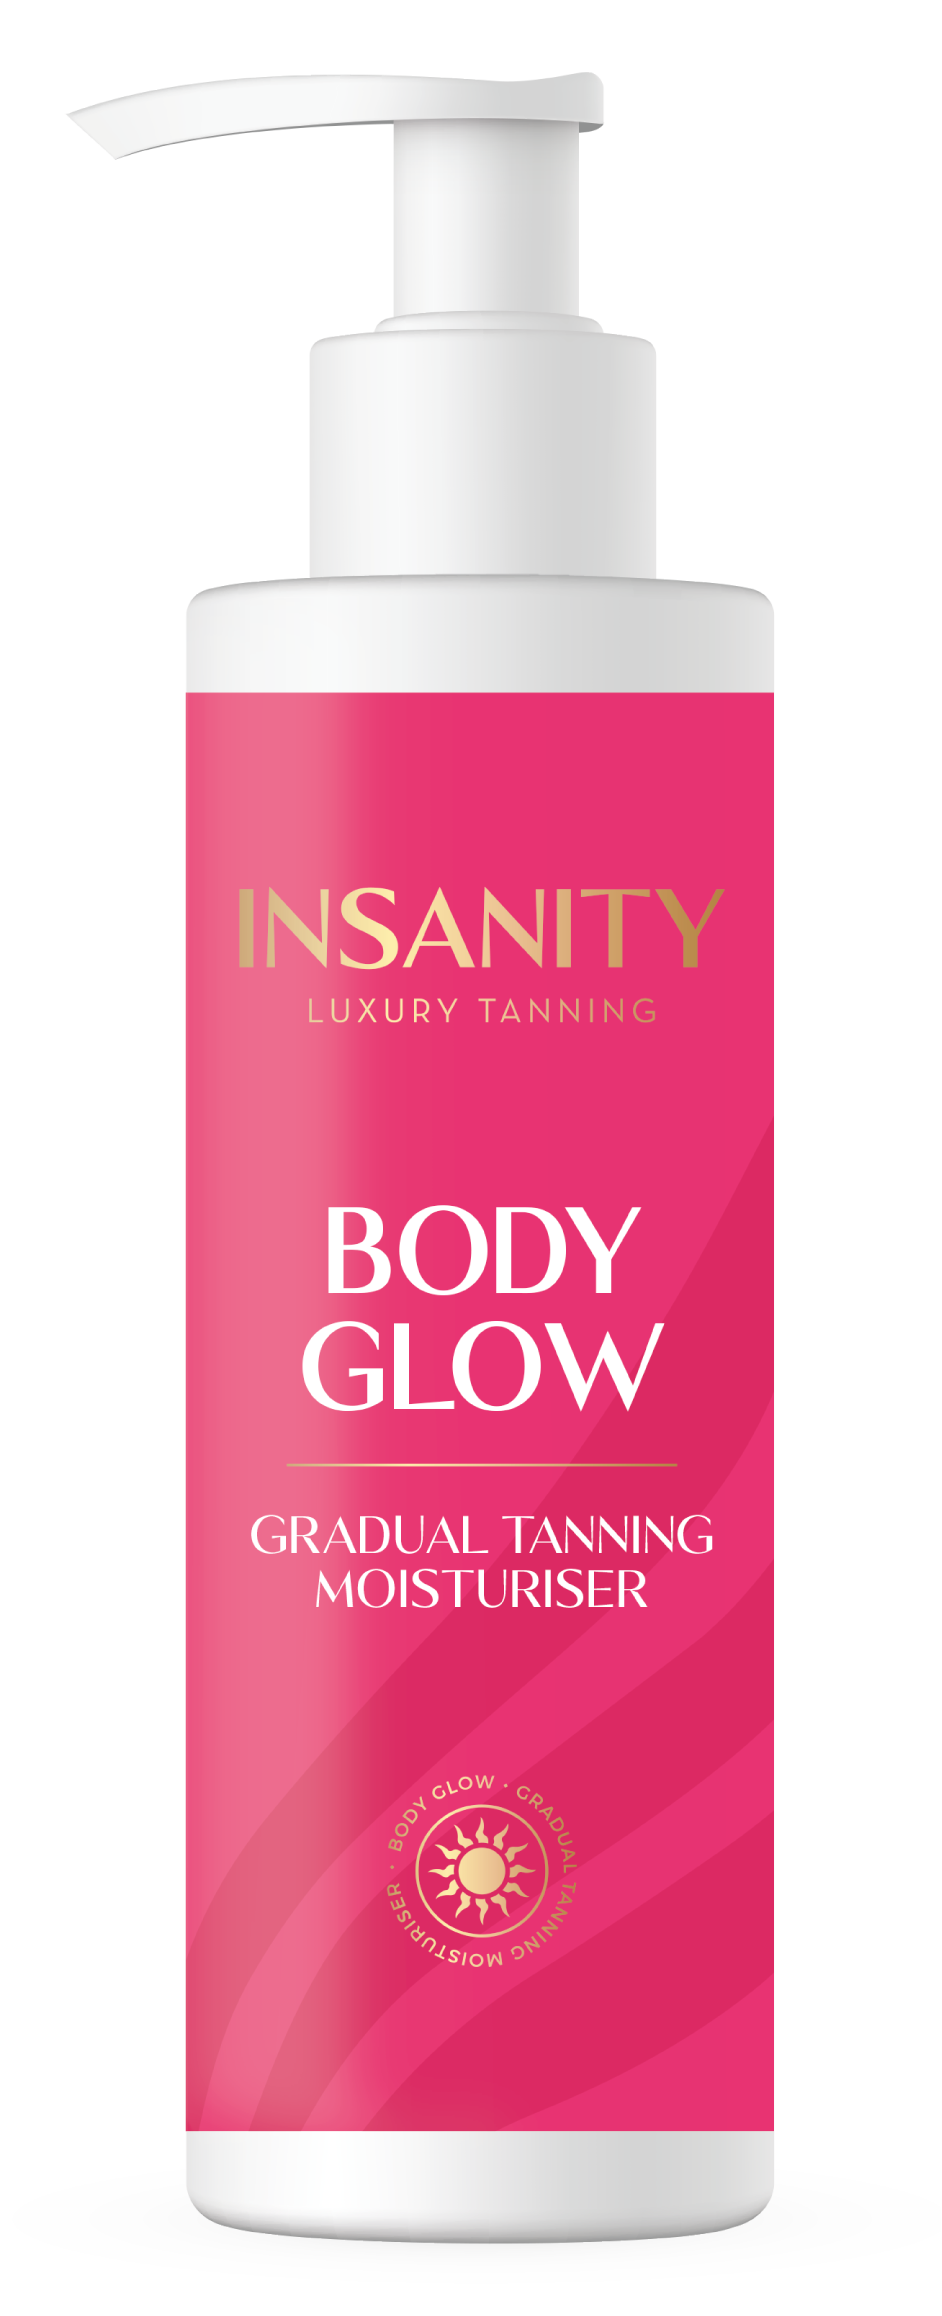 Insanity Body Glow